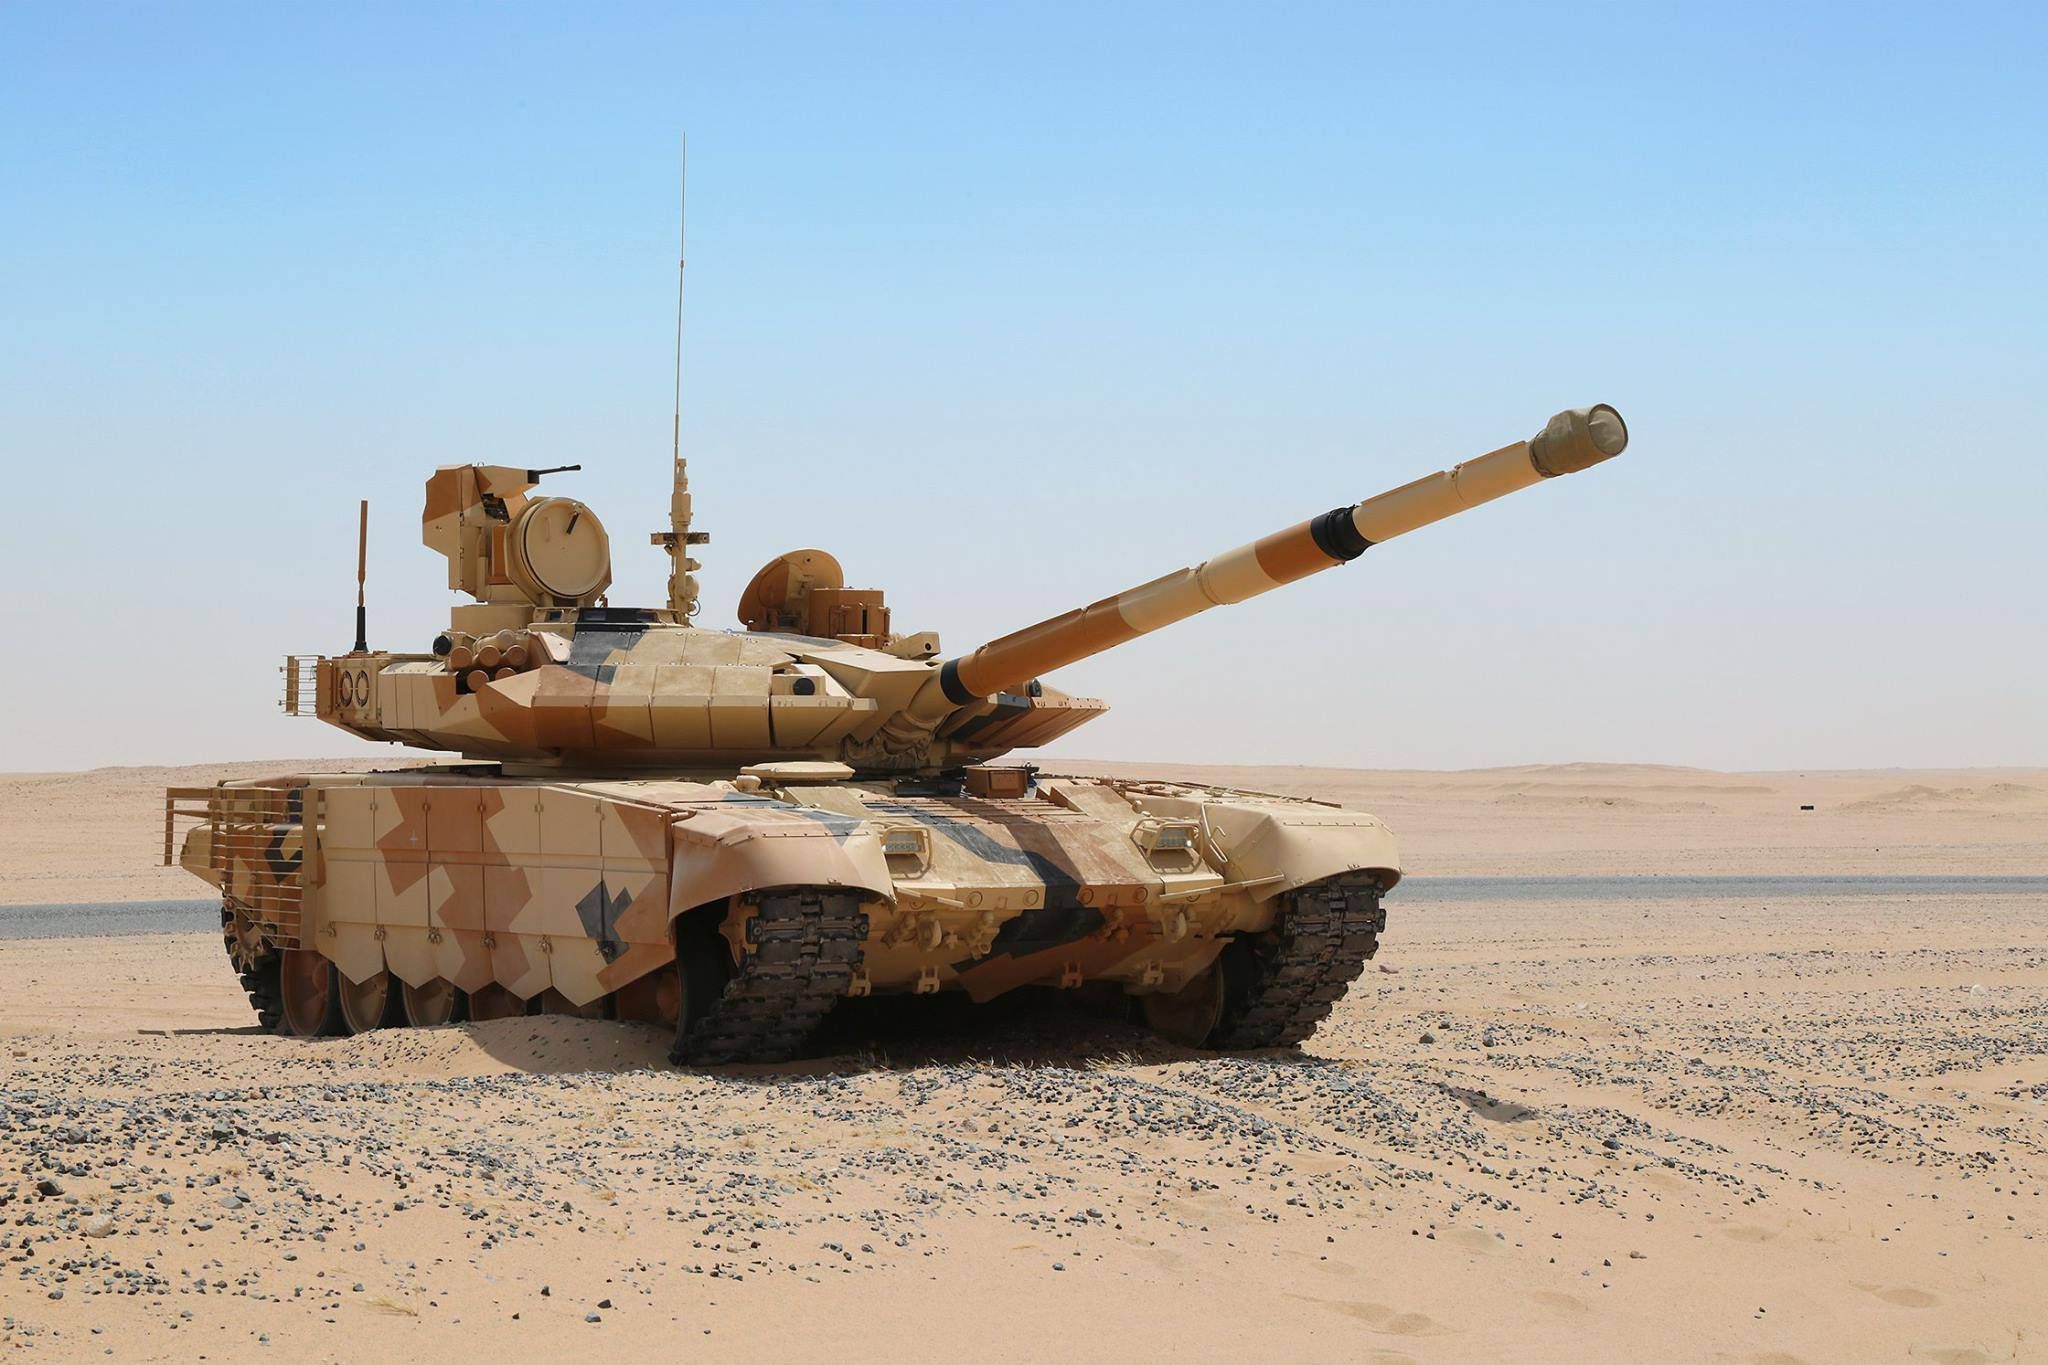 Η Αίγυπτος αγοράζει 500 νέα άρματα μάχης T-90MS από την Ρωσία για να αντιμετωπίσει την Τουρκία στην Λιβύη (βίντεο)